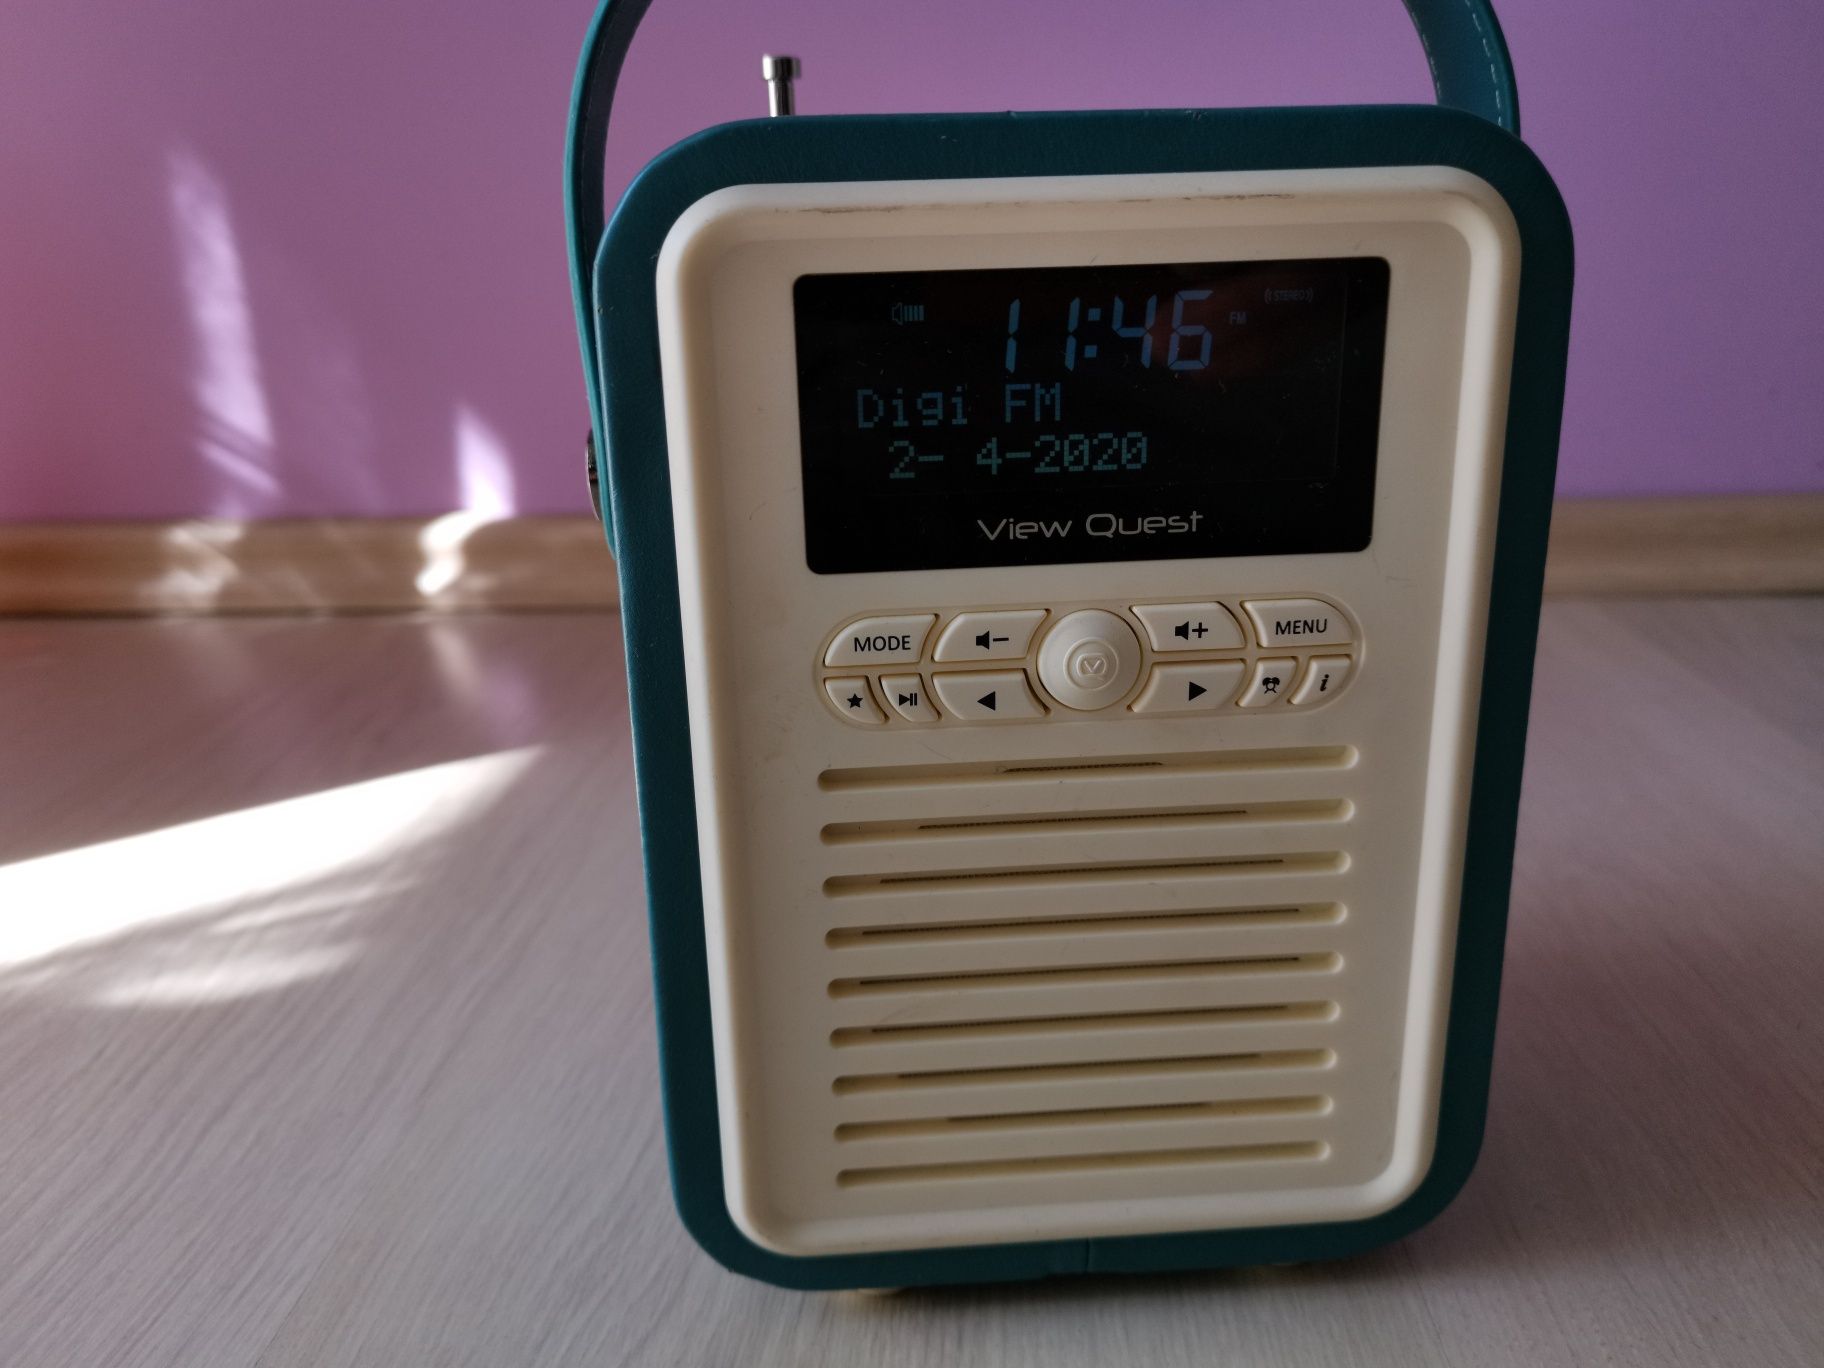 Radio view quest retro mini